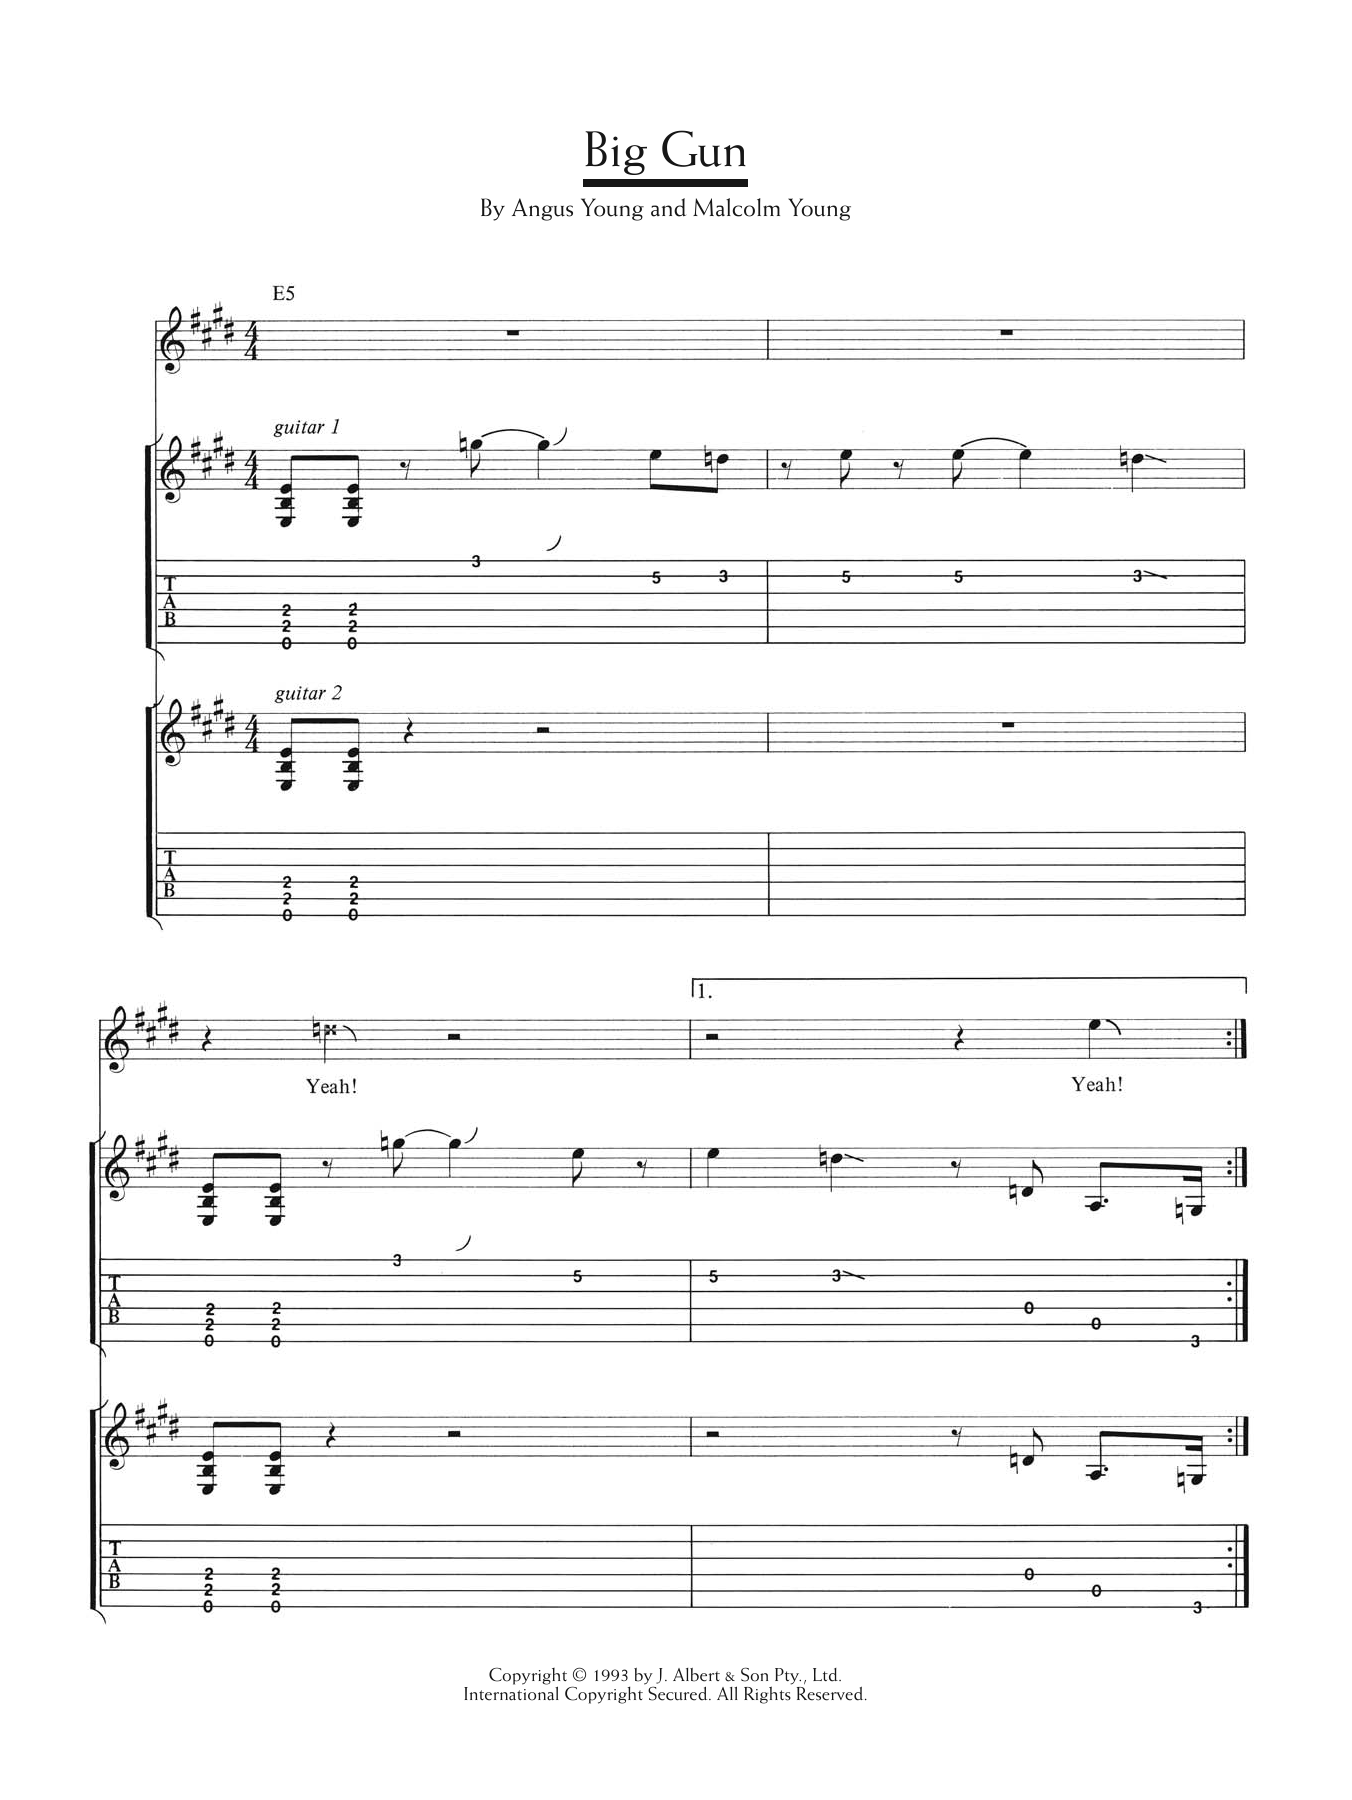 AC/DC Big Gun Sheet Music Notes & Chords for Guitar Tab - Download or Print PDF